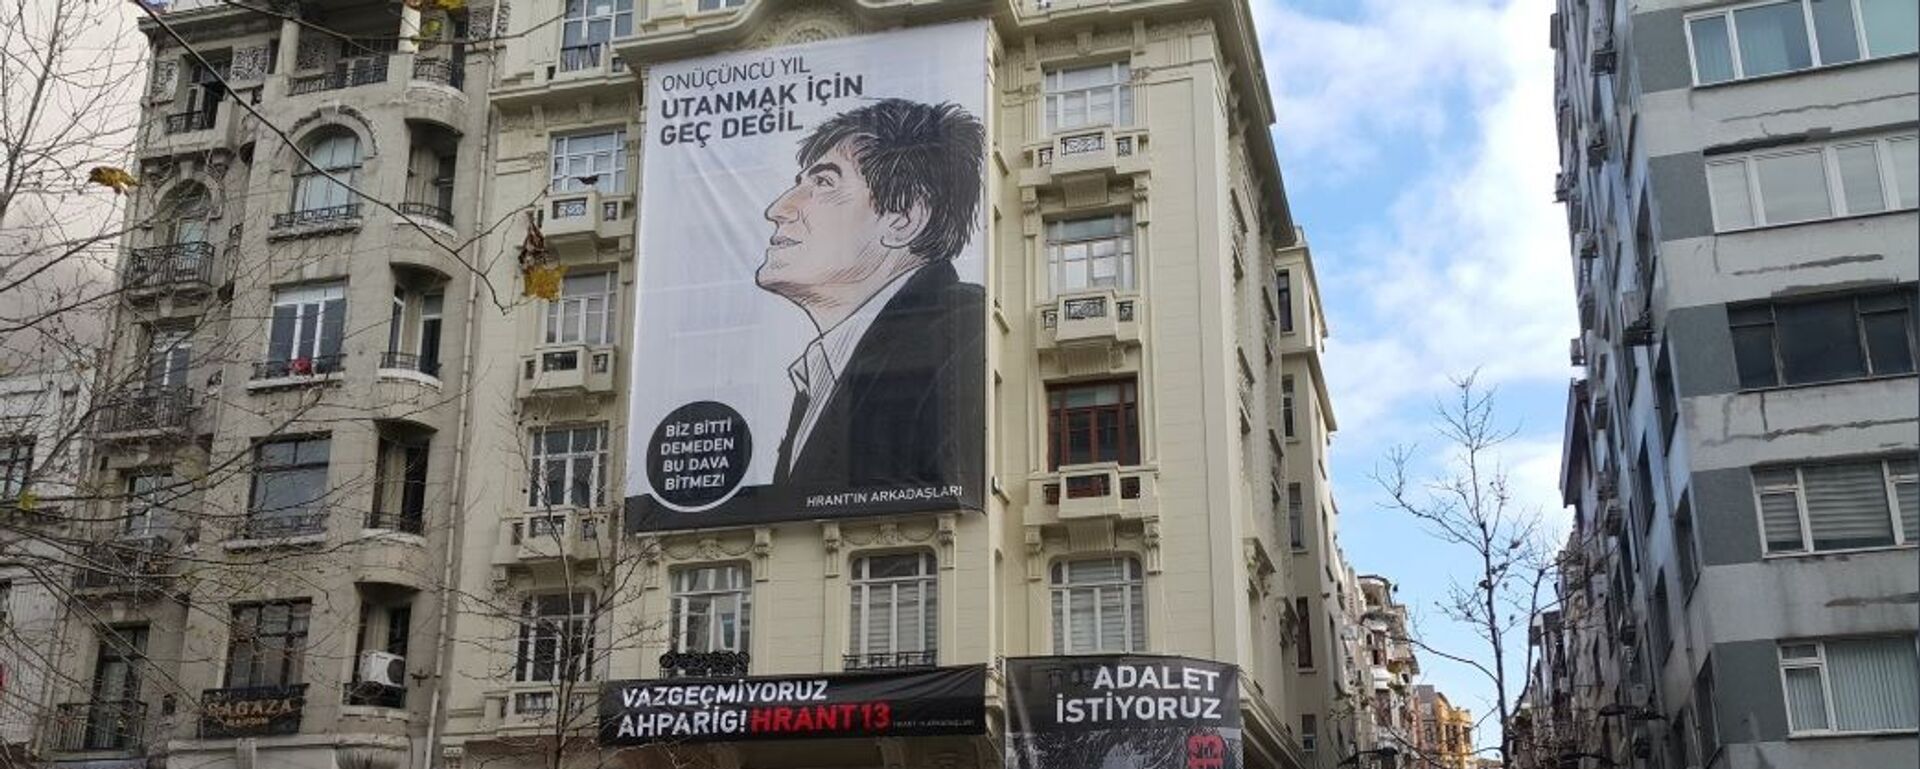 Gazeteci Hrant Dink öldürülüşünün 13’üncü yılında anıldı.  - Sputnik Türkiye, 1920, 01.11.2023